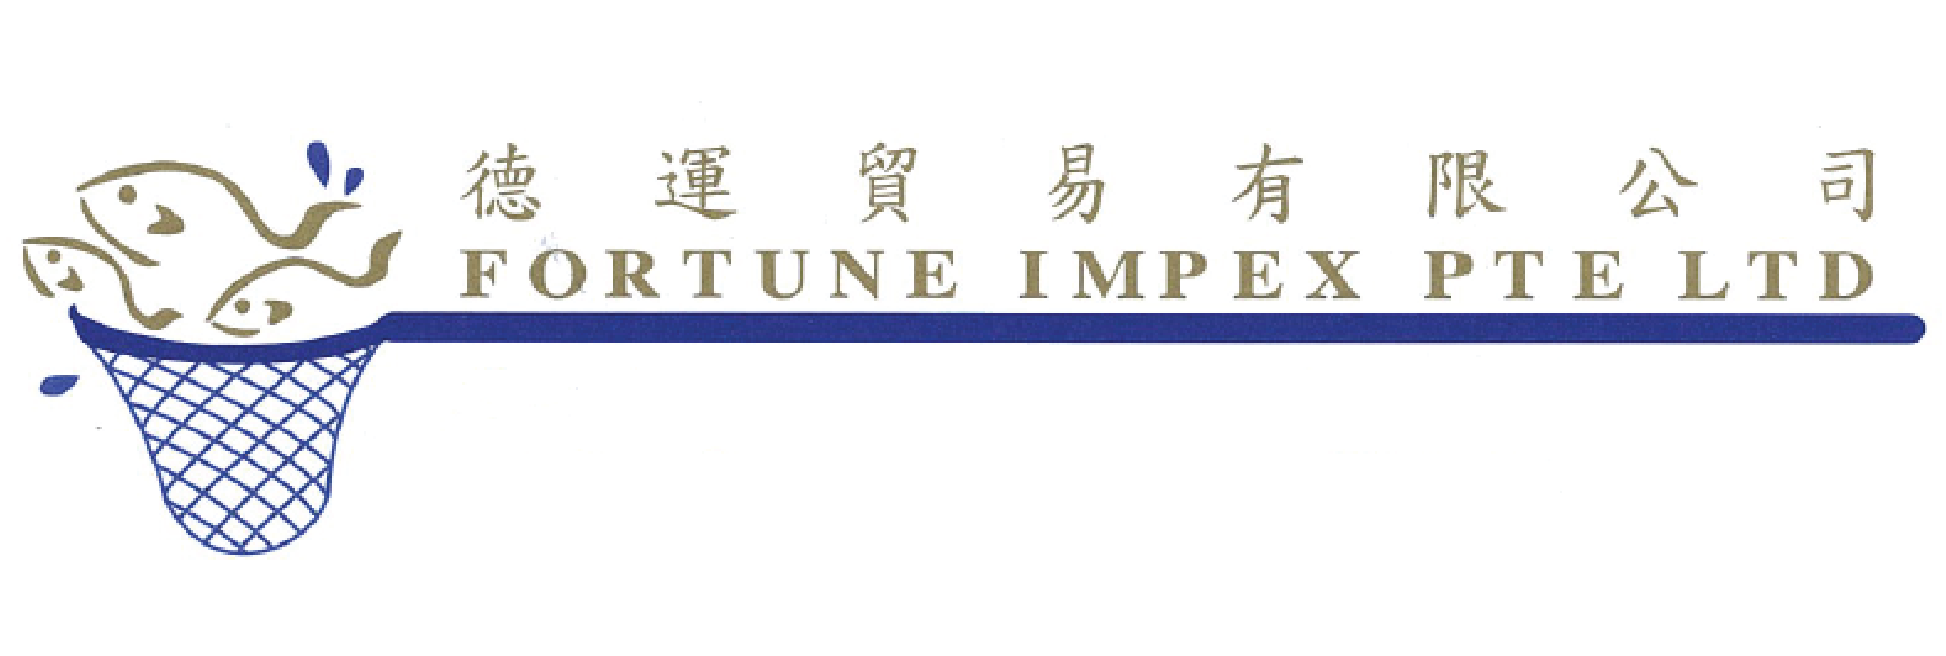 Fortune Impex Logo